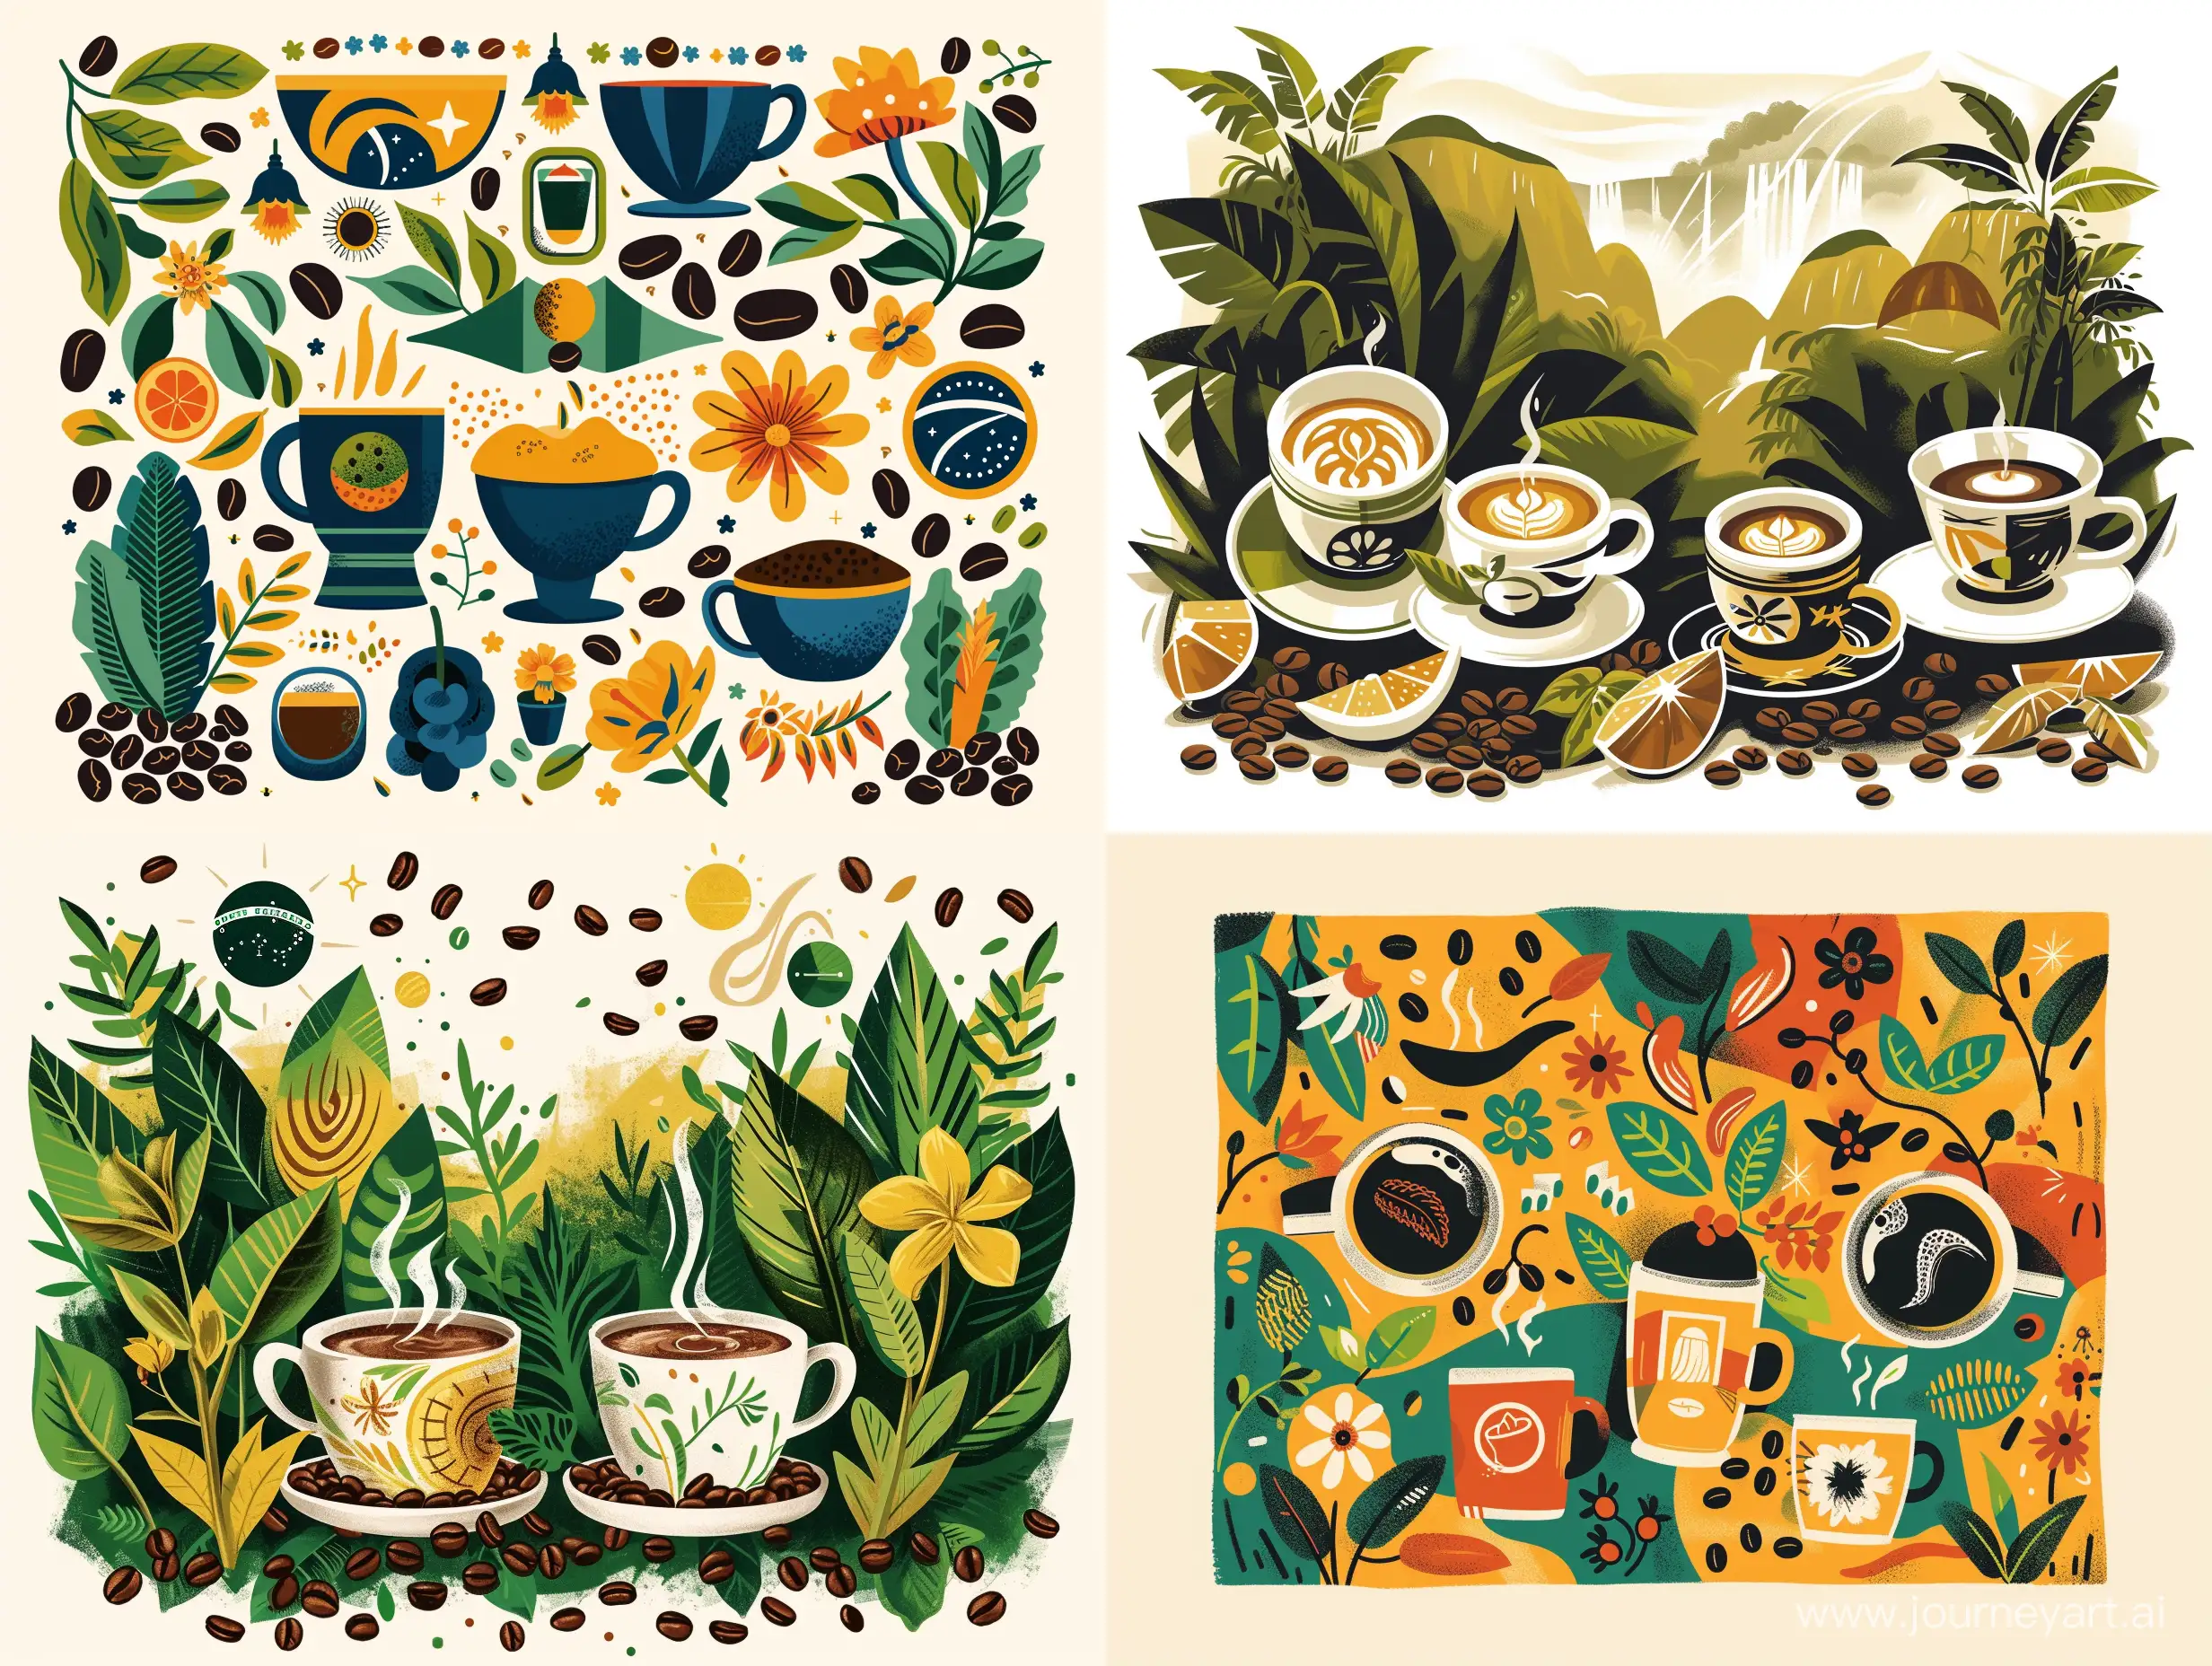 иллюстрация  в стиле иллюстратора Piet Parra  кофе в перемешку с символами и природой Бразилии, чашками, зернами кофе 